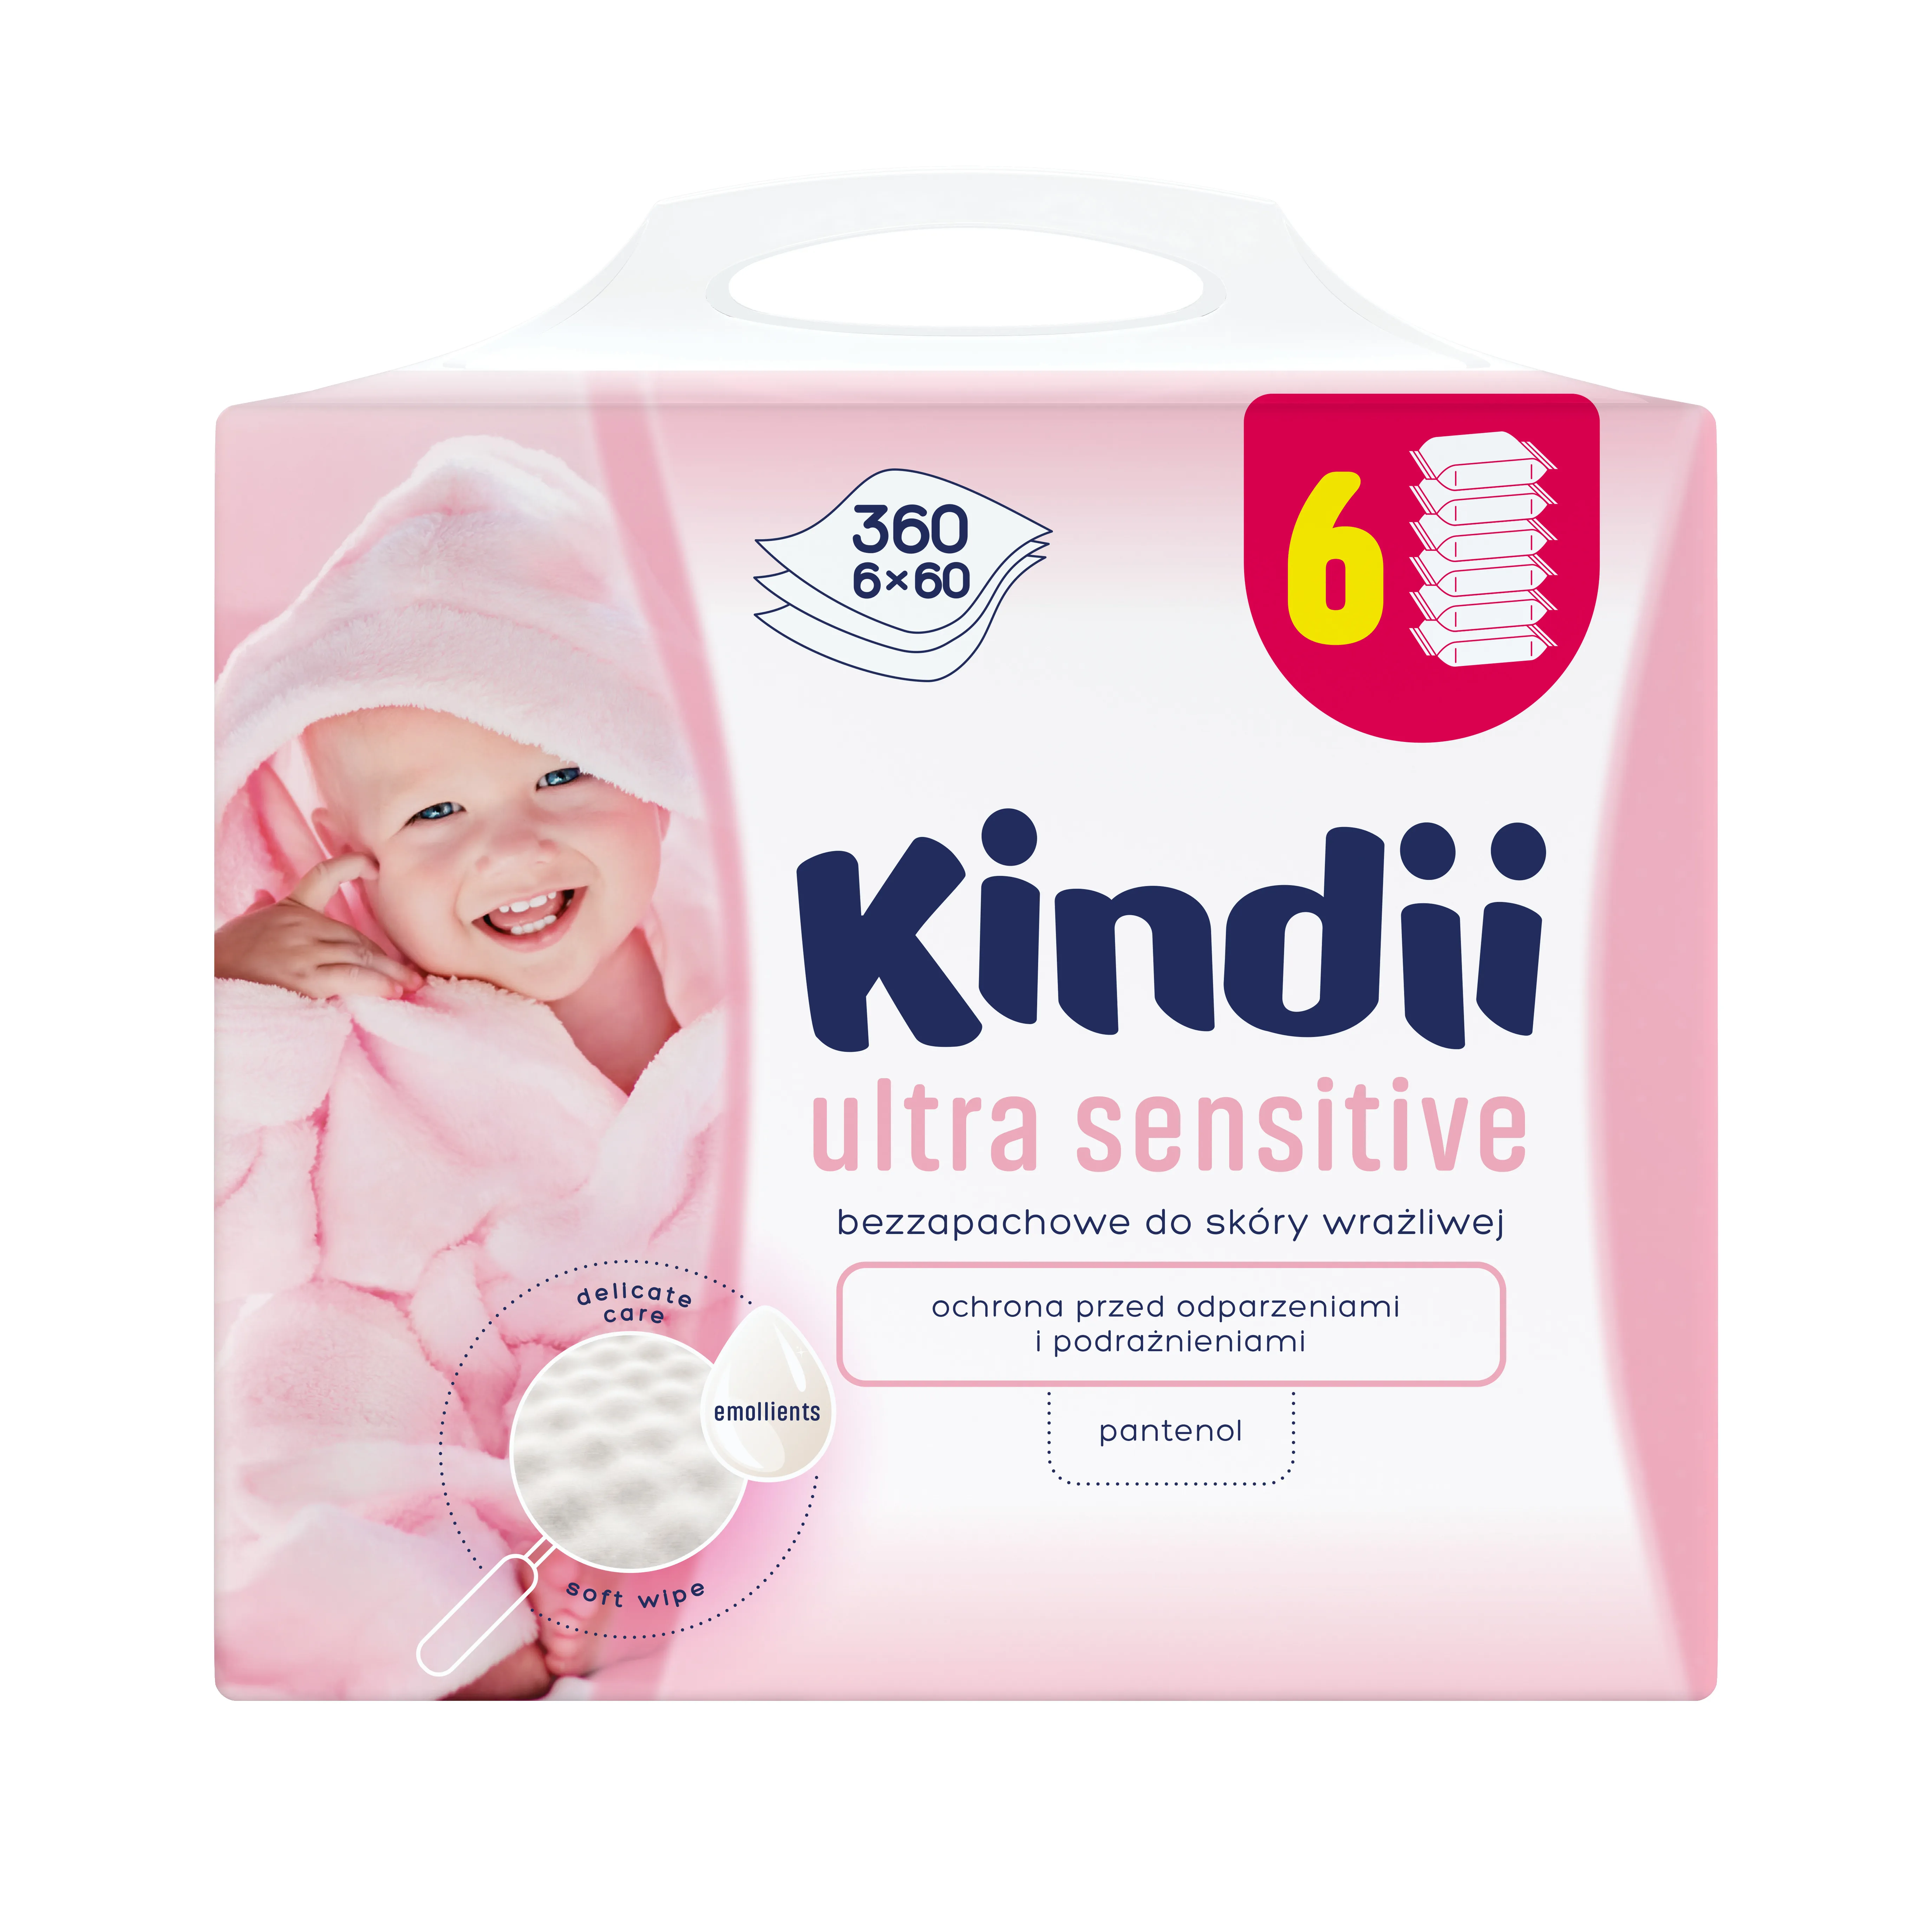 Kindii Ultra Sensitive, bezzapachowe chusteczki dla dzieci do skóry wrazliwej, 360 szt